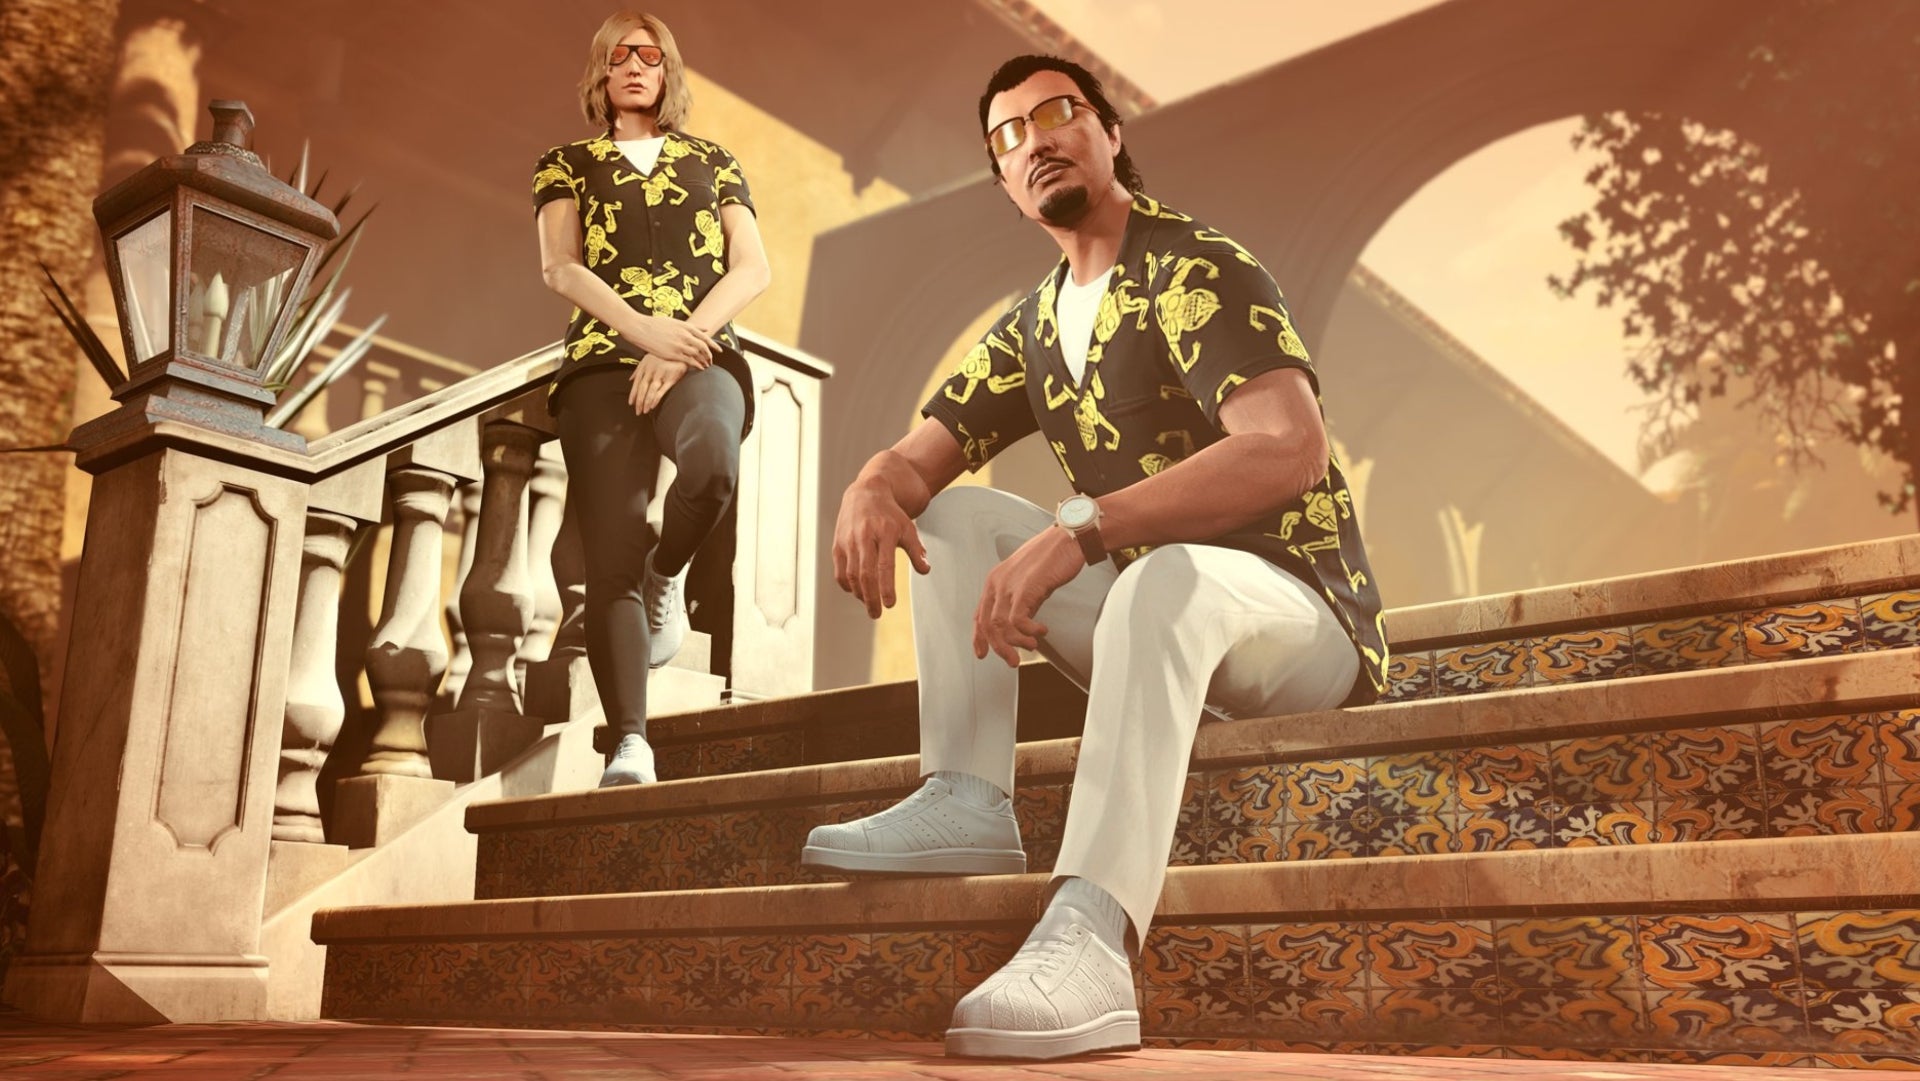 Rockstar的官方图片是两个角色坐在别墅的楼梯上